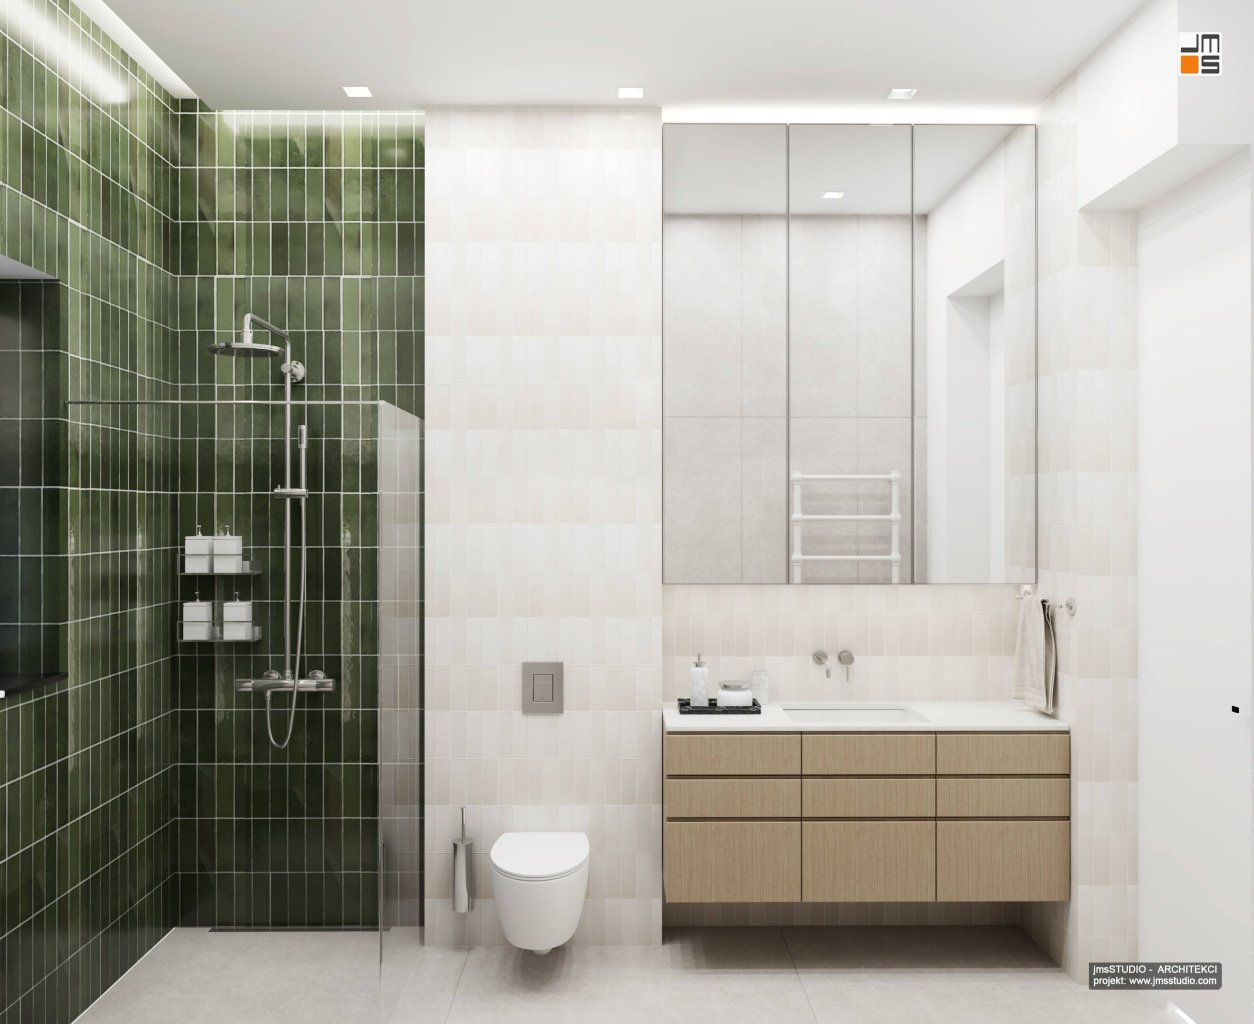 Klasyczna elegancja w projektowaniu wnętrz to zestawienie pięknych zielonych płytek z klasycznymi formami mebli w aranżacji ponadczasowej łazienki